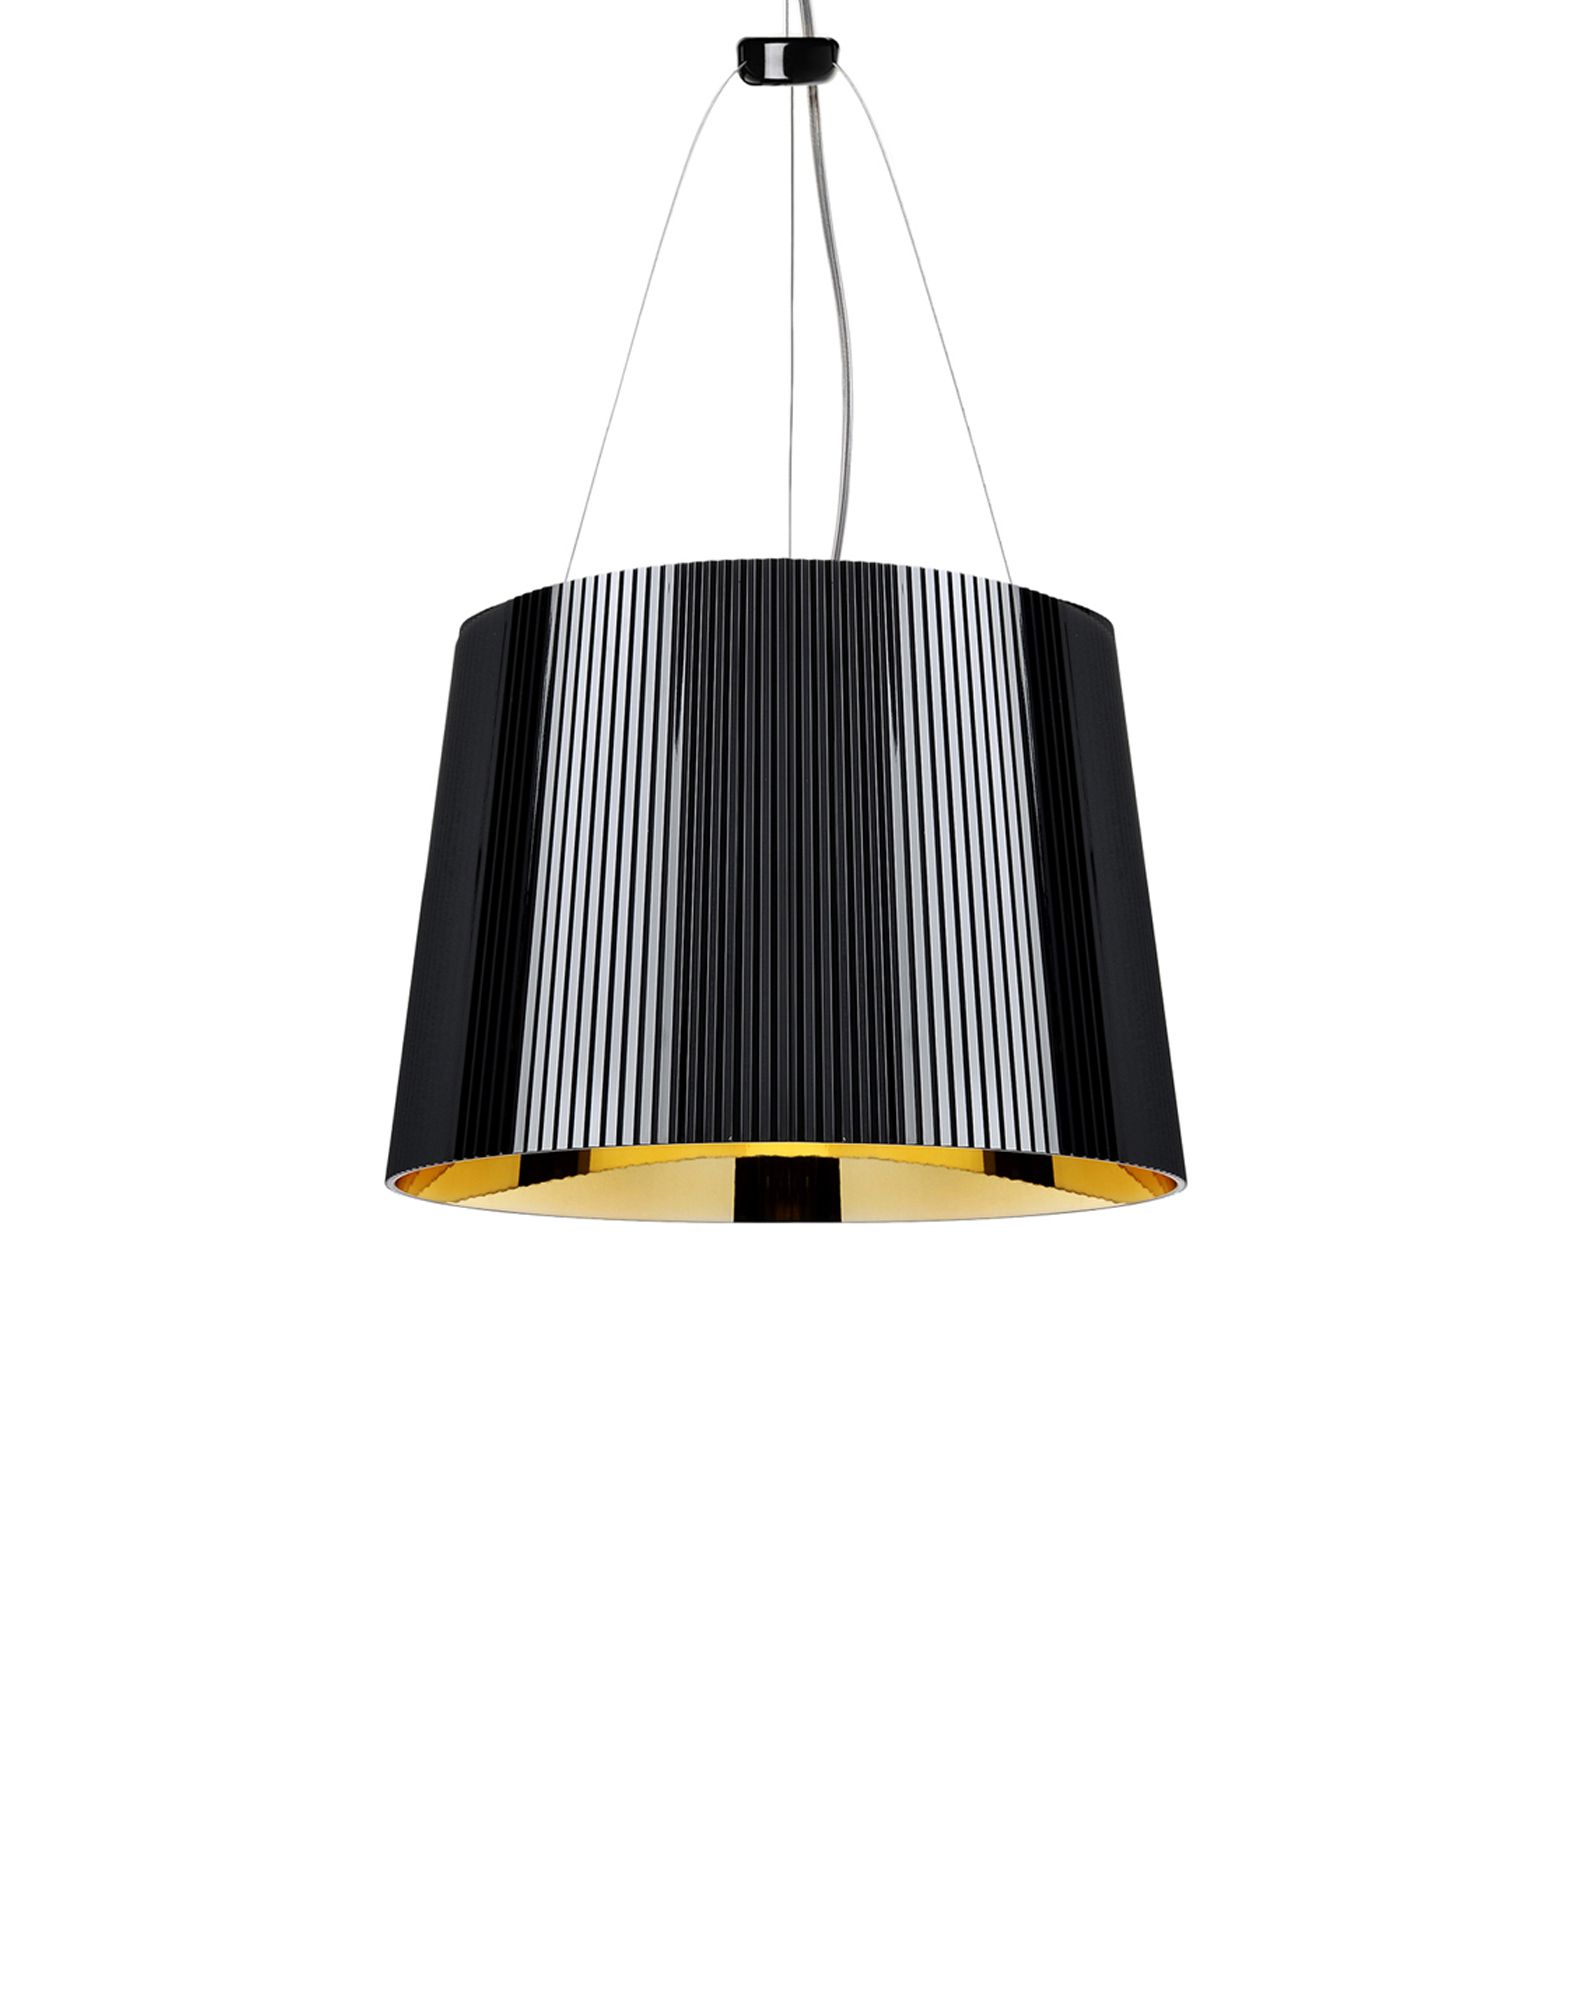 Suspensie Kartell Ge’ design Ferruccio Laviani E27 max 70W h37cm negru-auriu